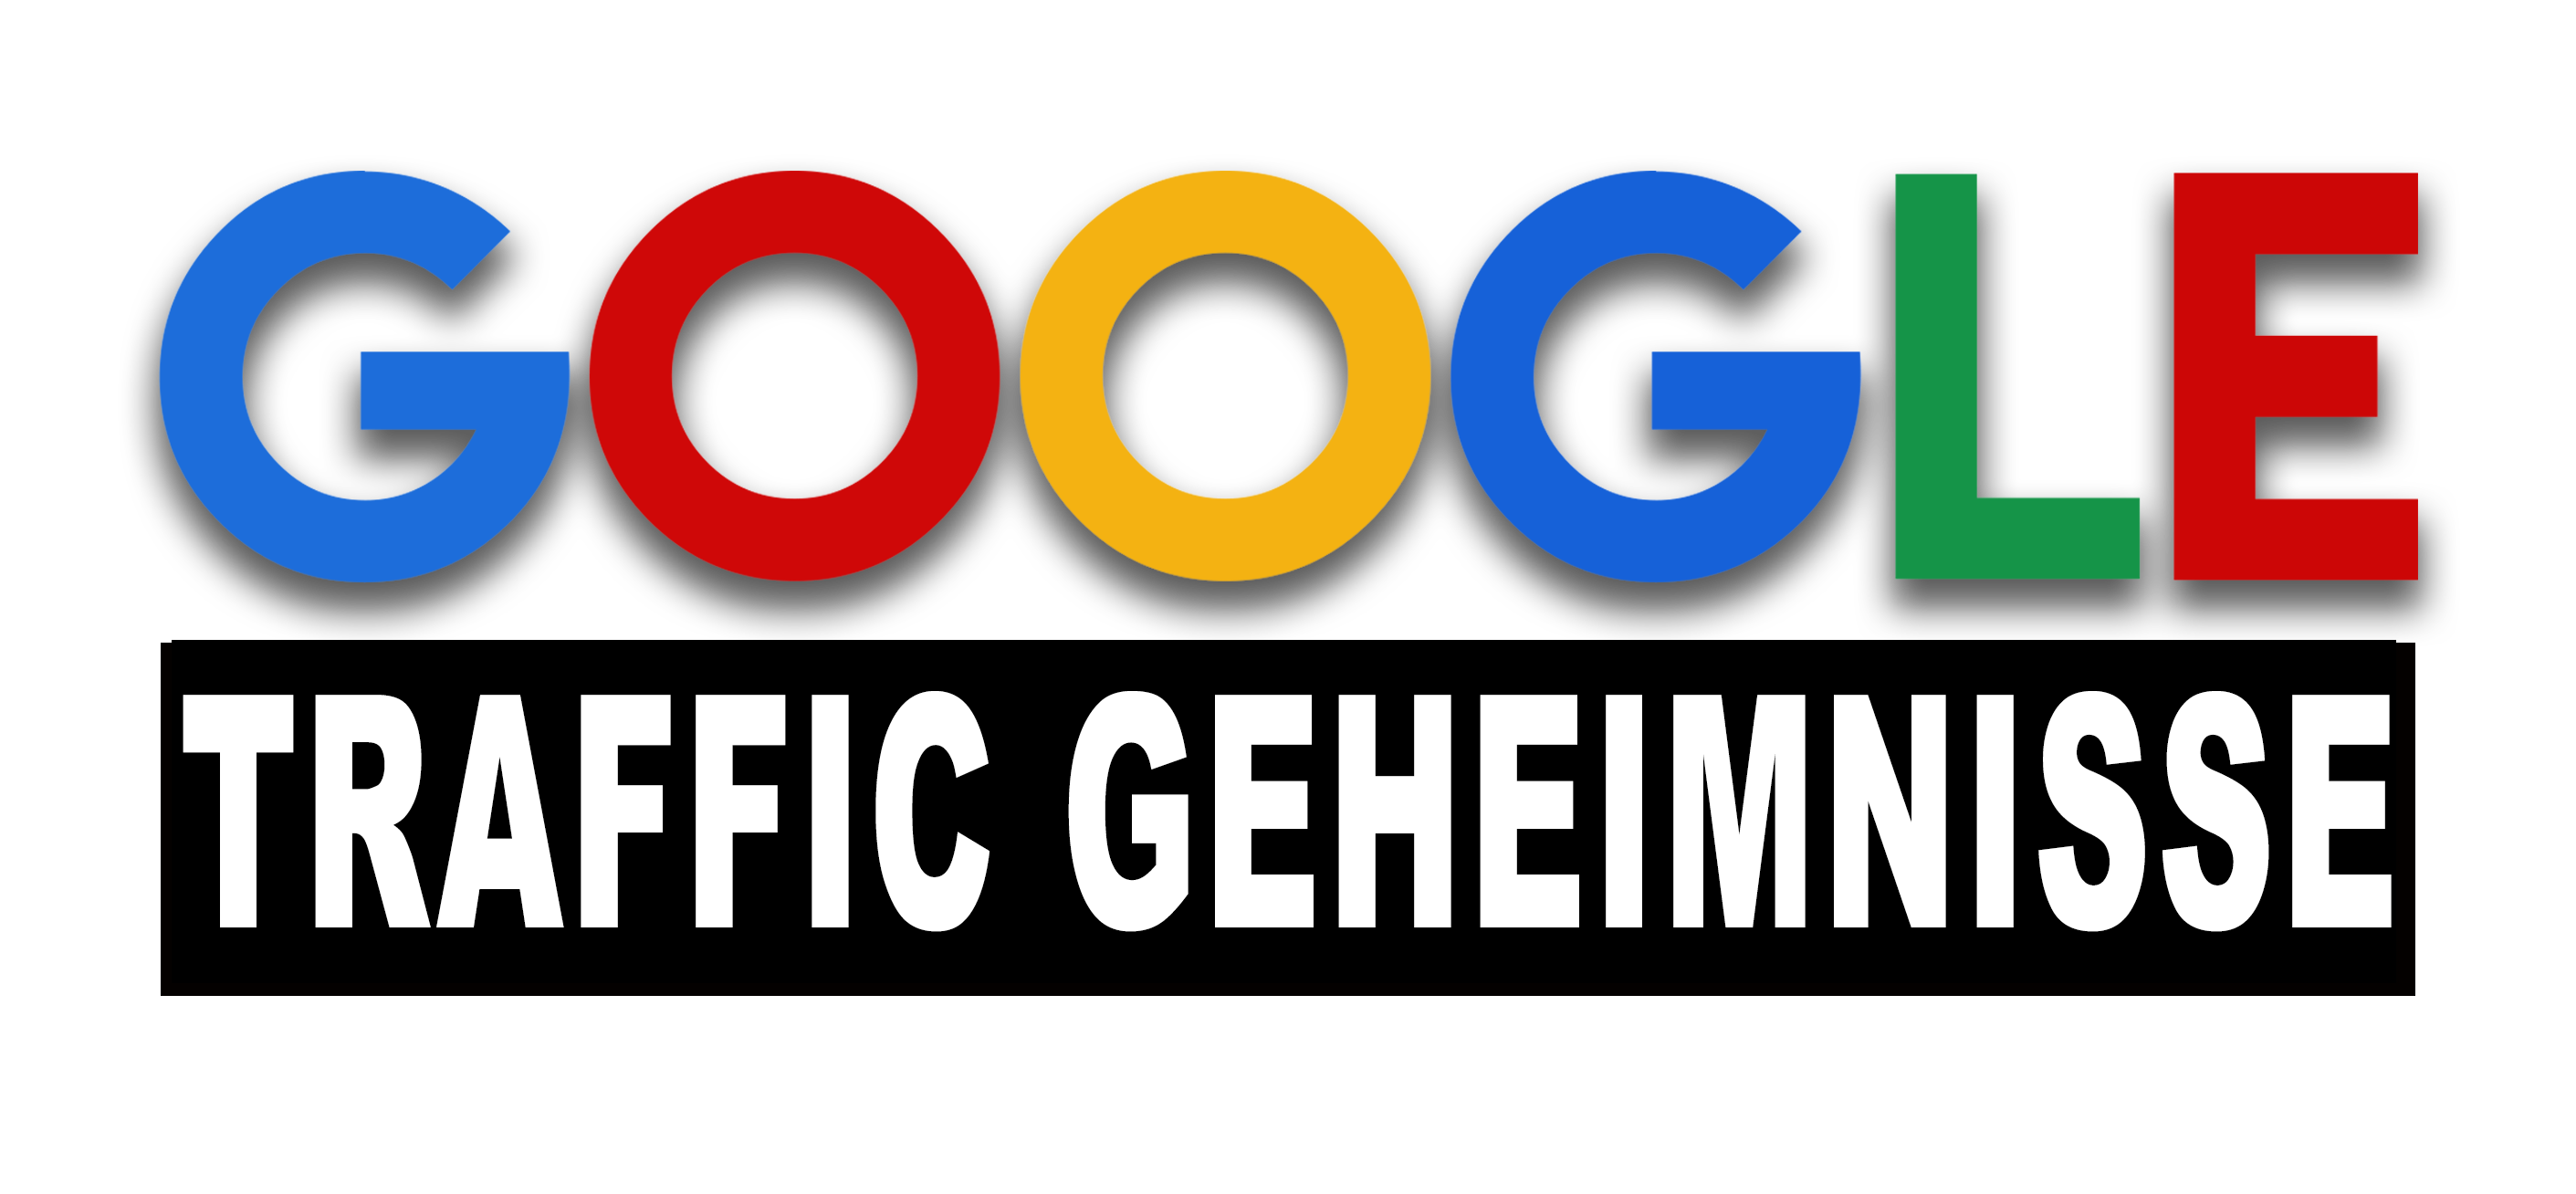 Google Traffic Secrets
 